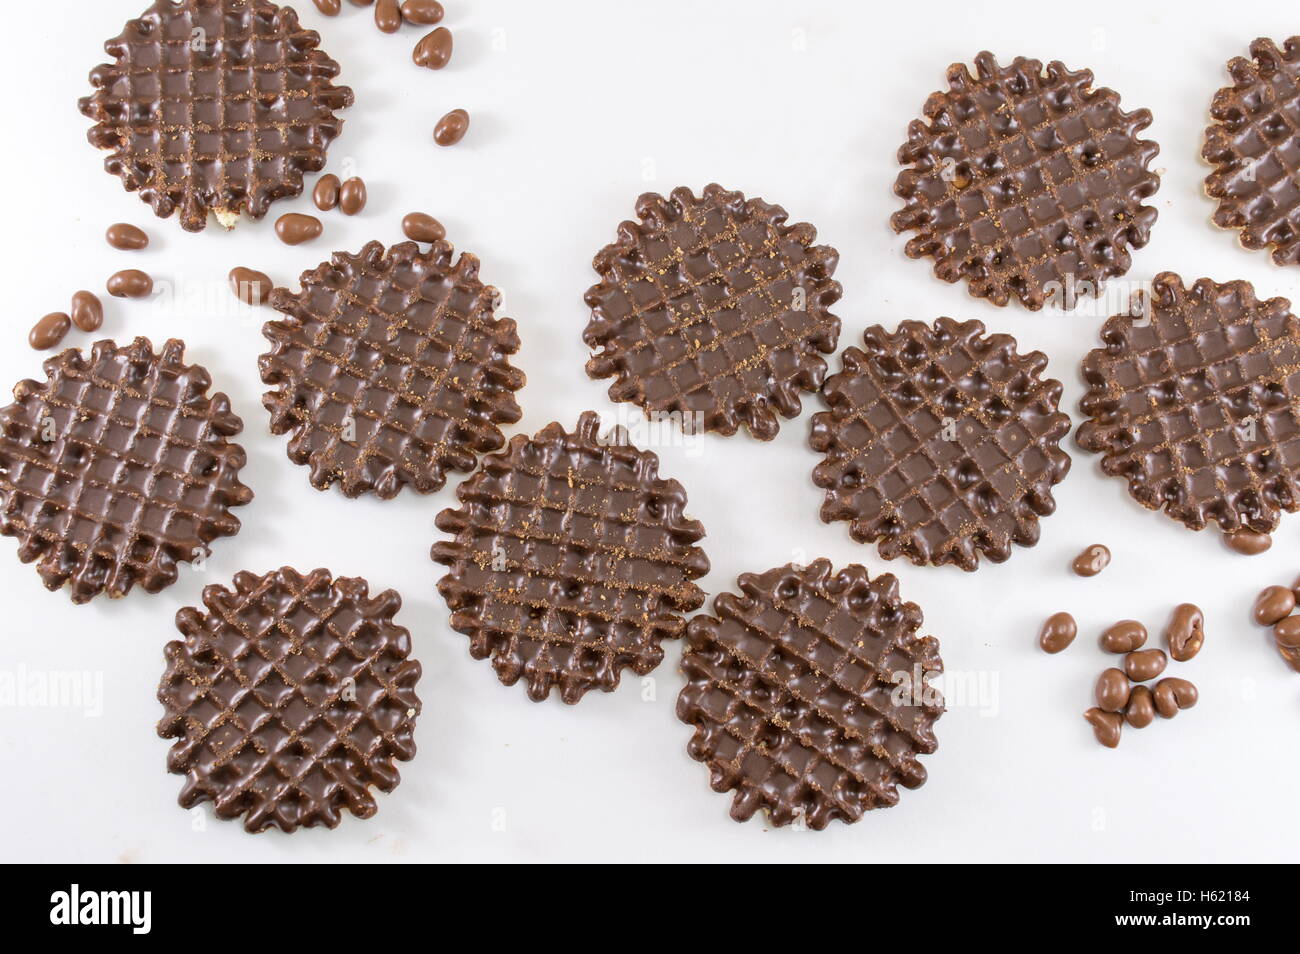 Ricoperta di cioccolato round biscotti fatti in casa su bianco Foto Stock